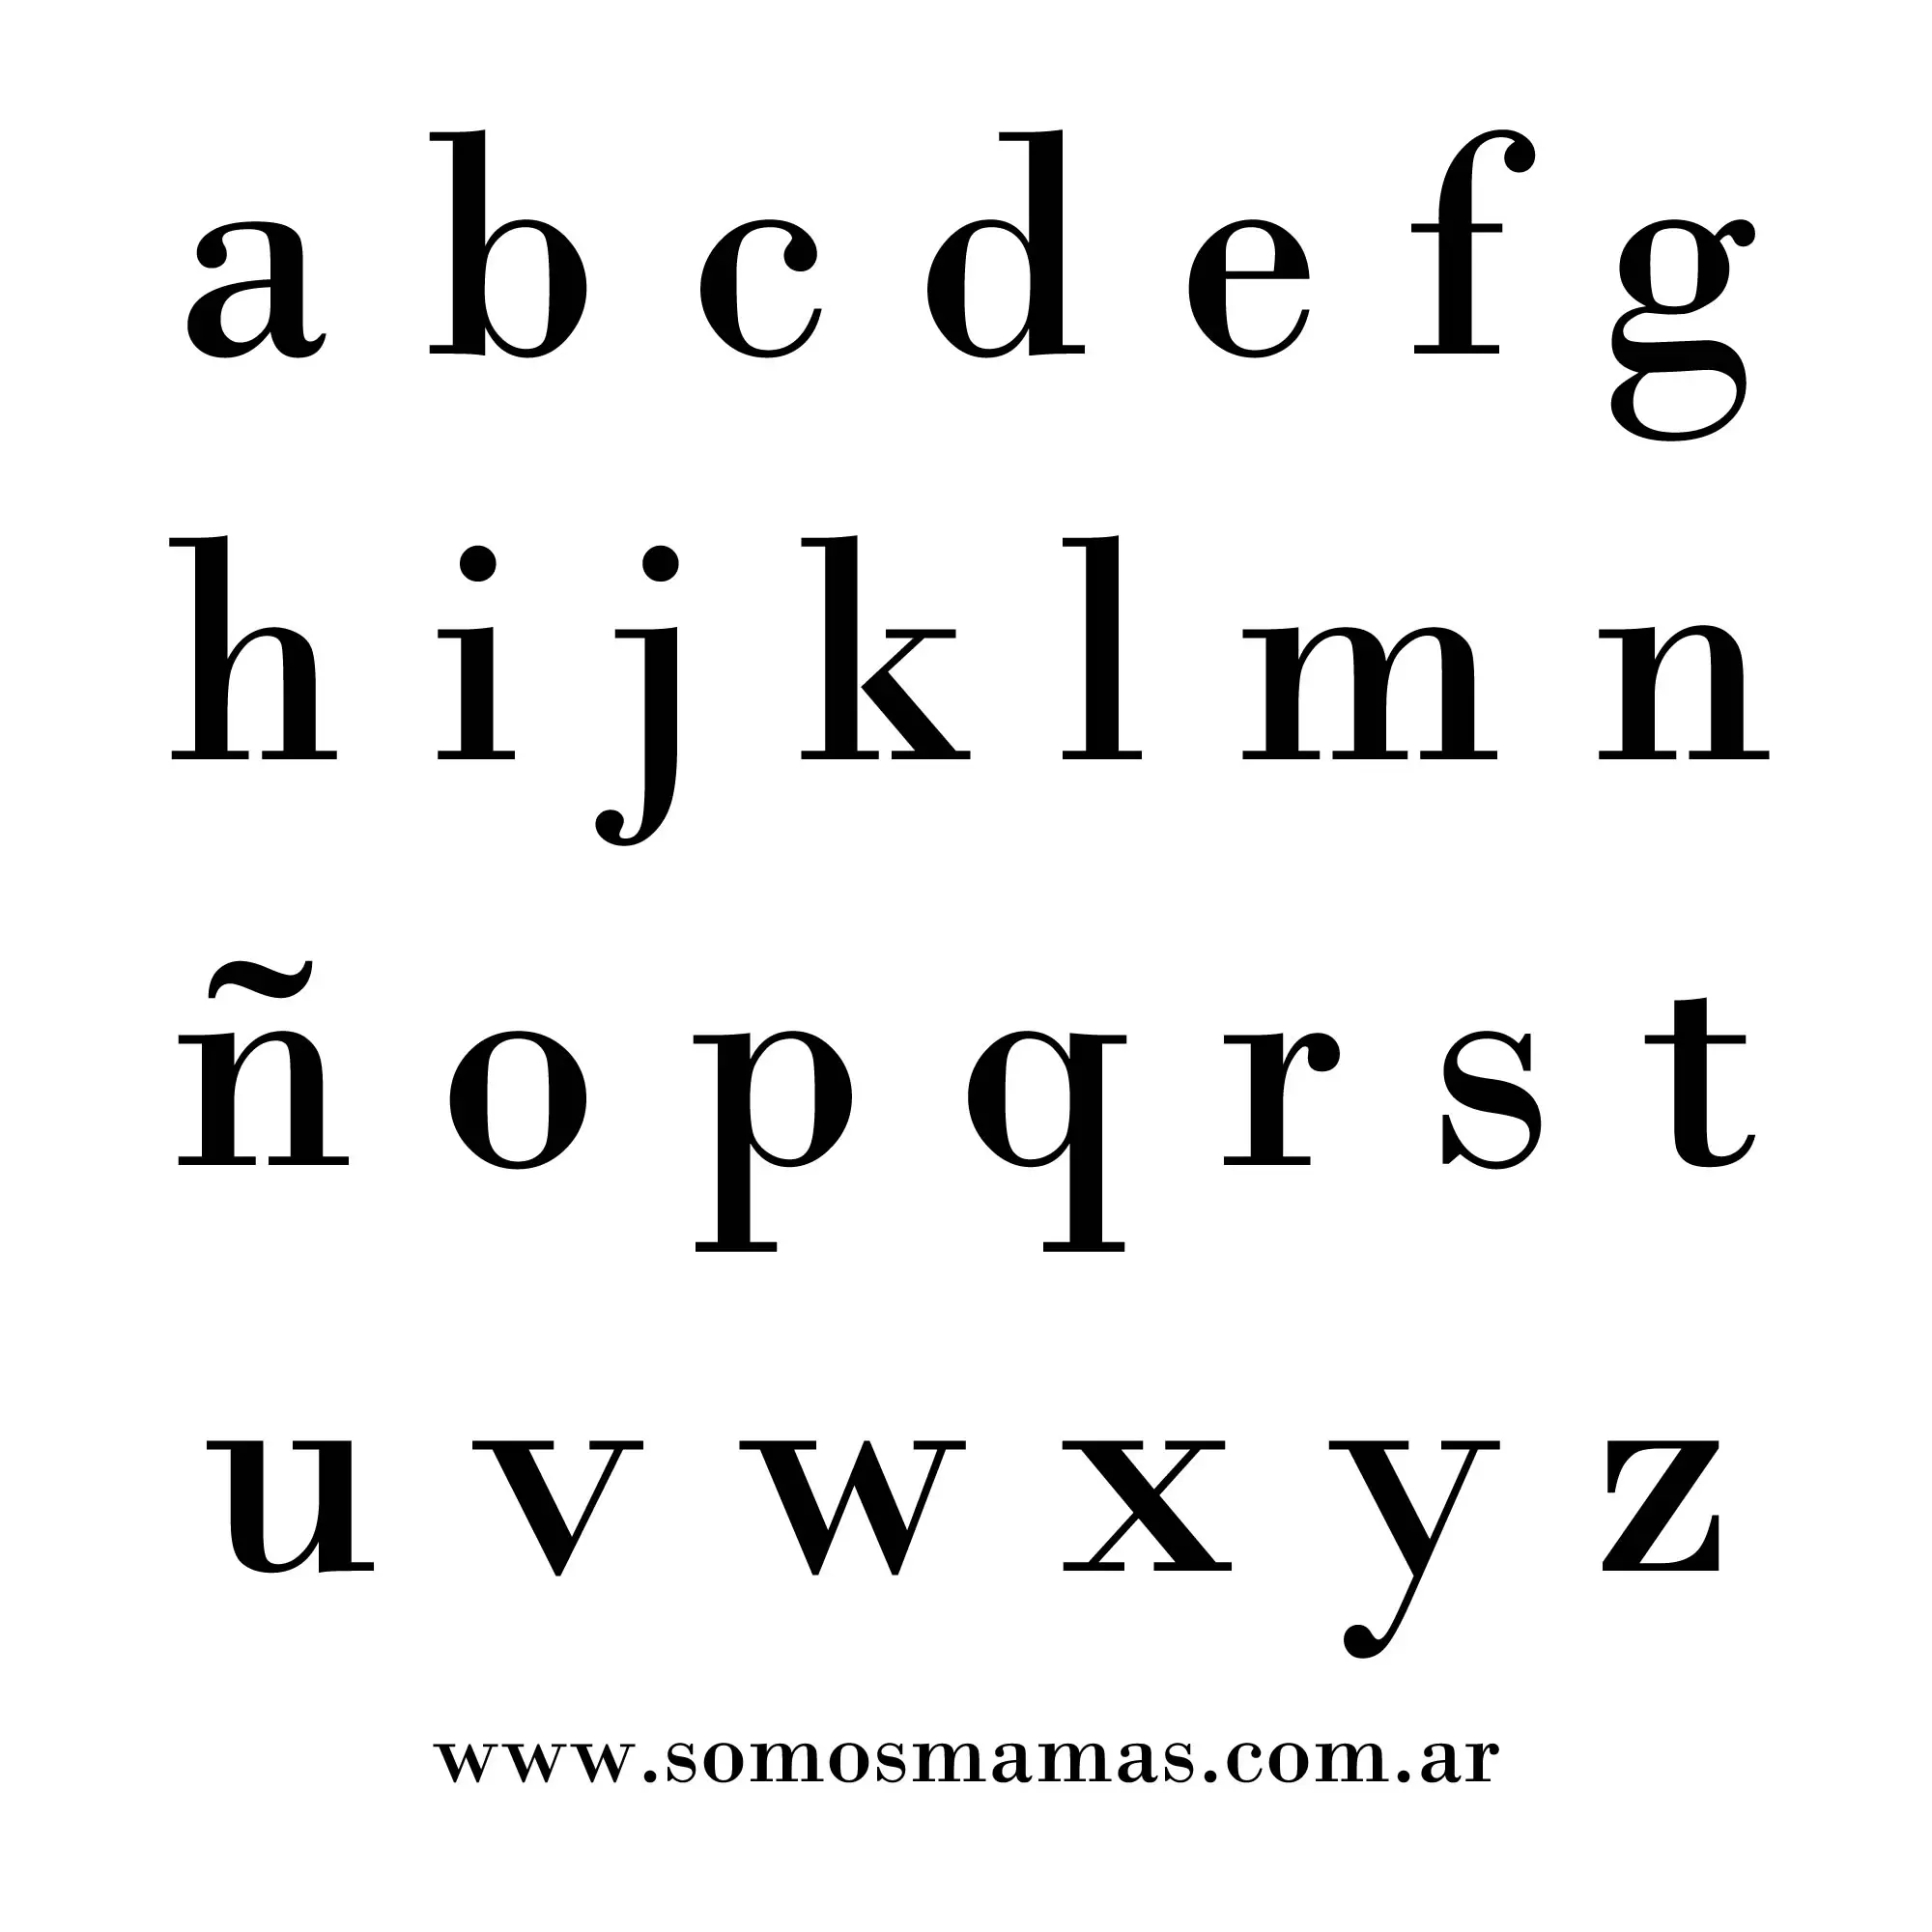 Letras del abecedario en minuscula